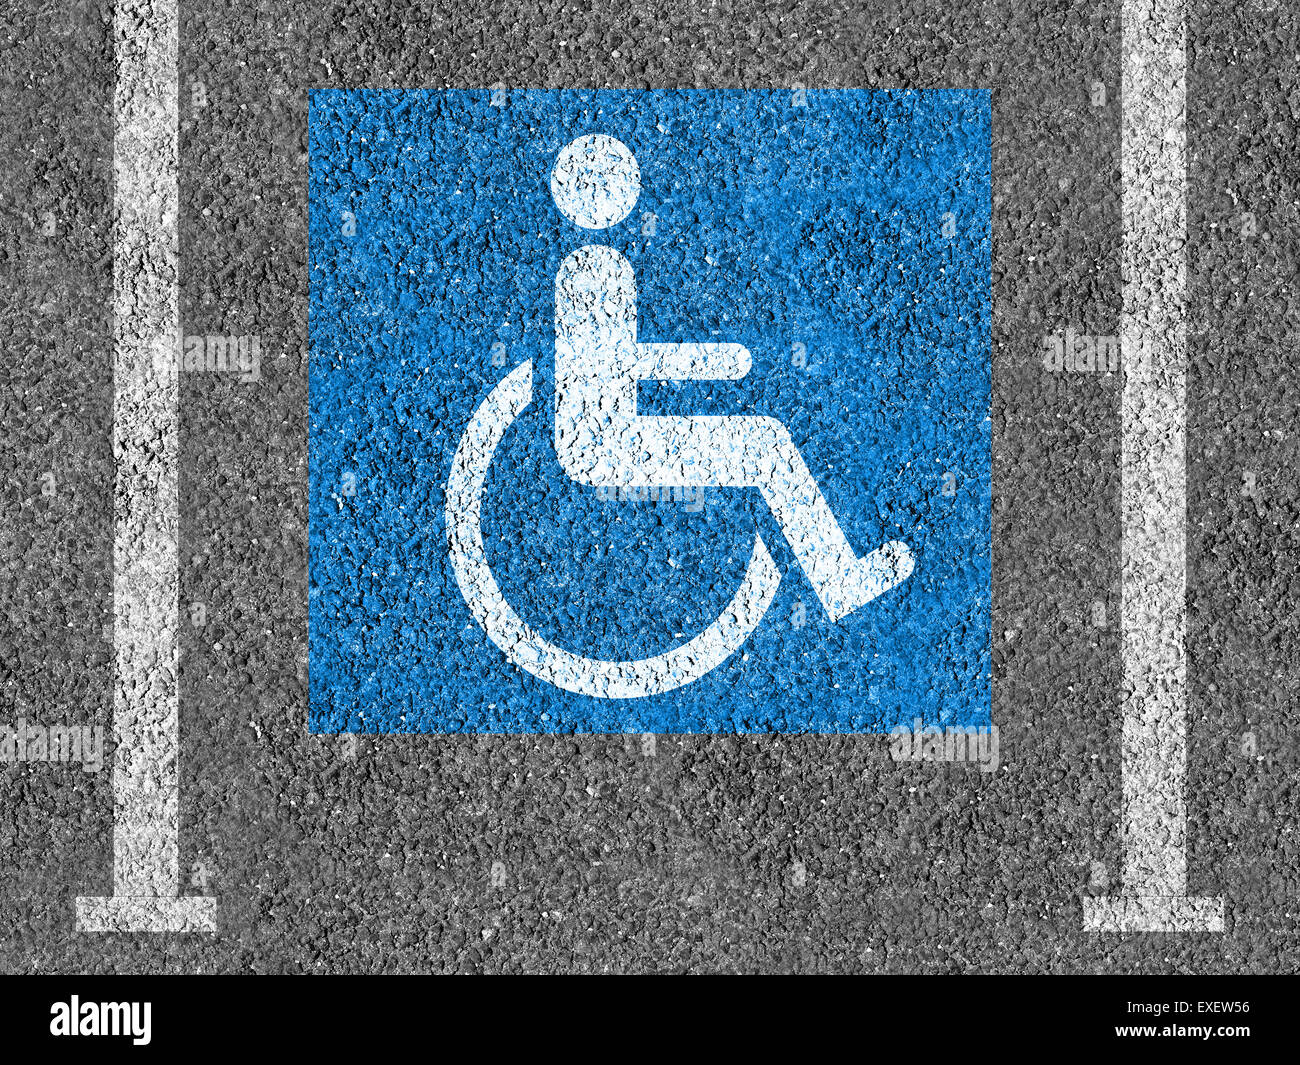 Blu e bianco Handicap il simbolo di parcheggio su asfalto Foto Stock